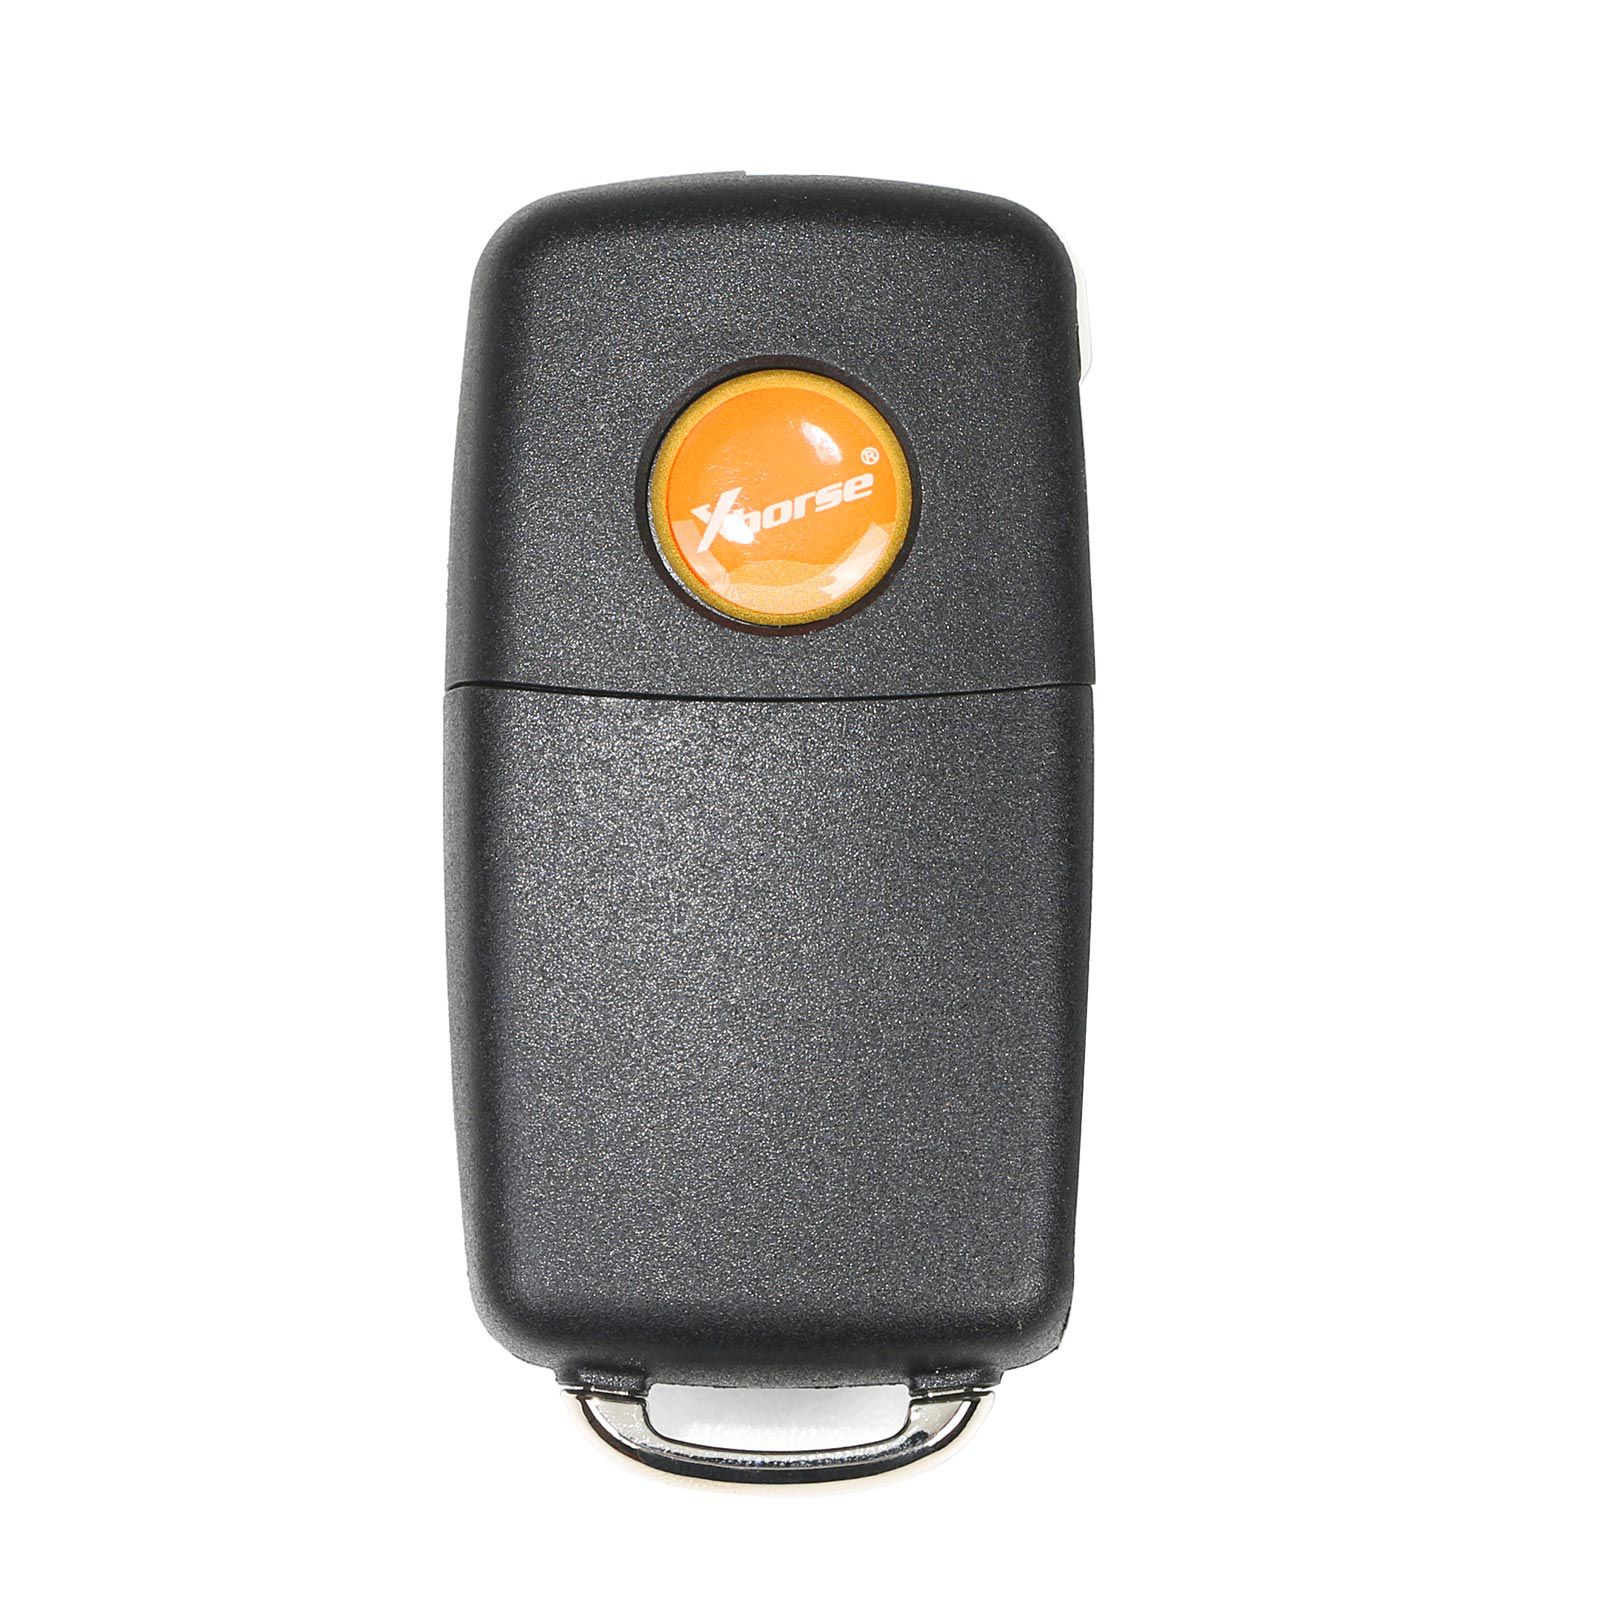 Xhorse XKB510EN Universal Remote Key B5 Type 3 Buttons English Version 5pcs/lot